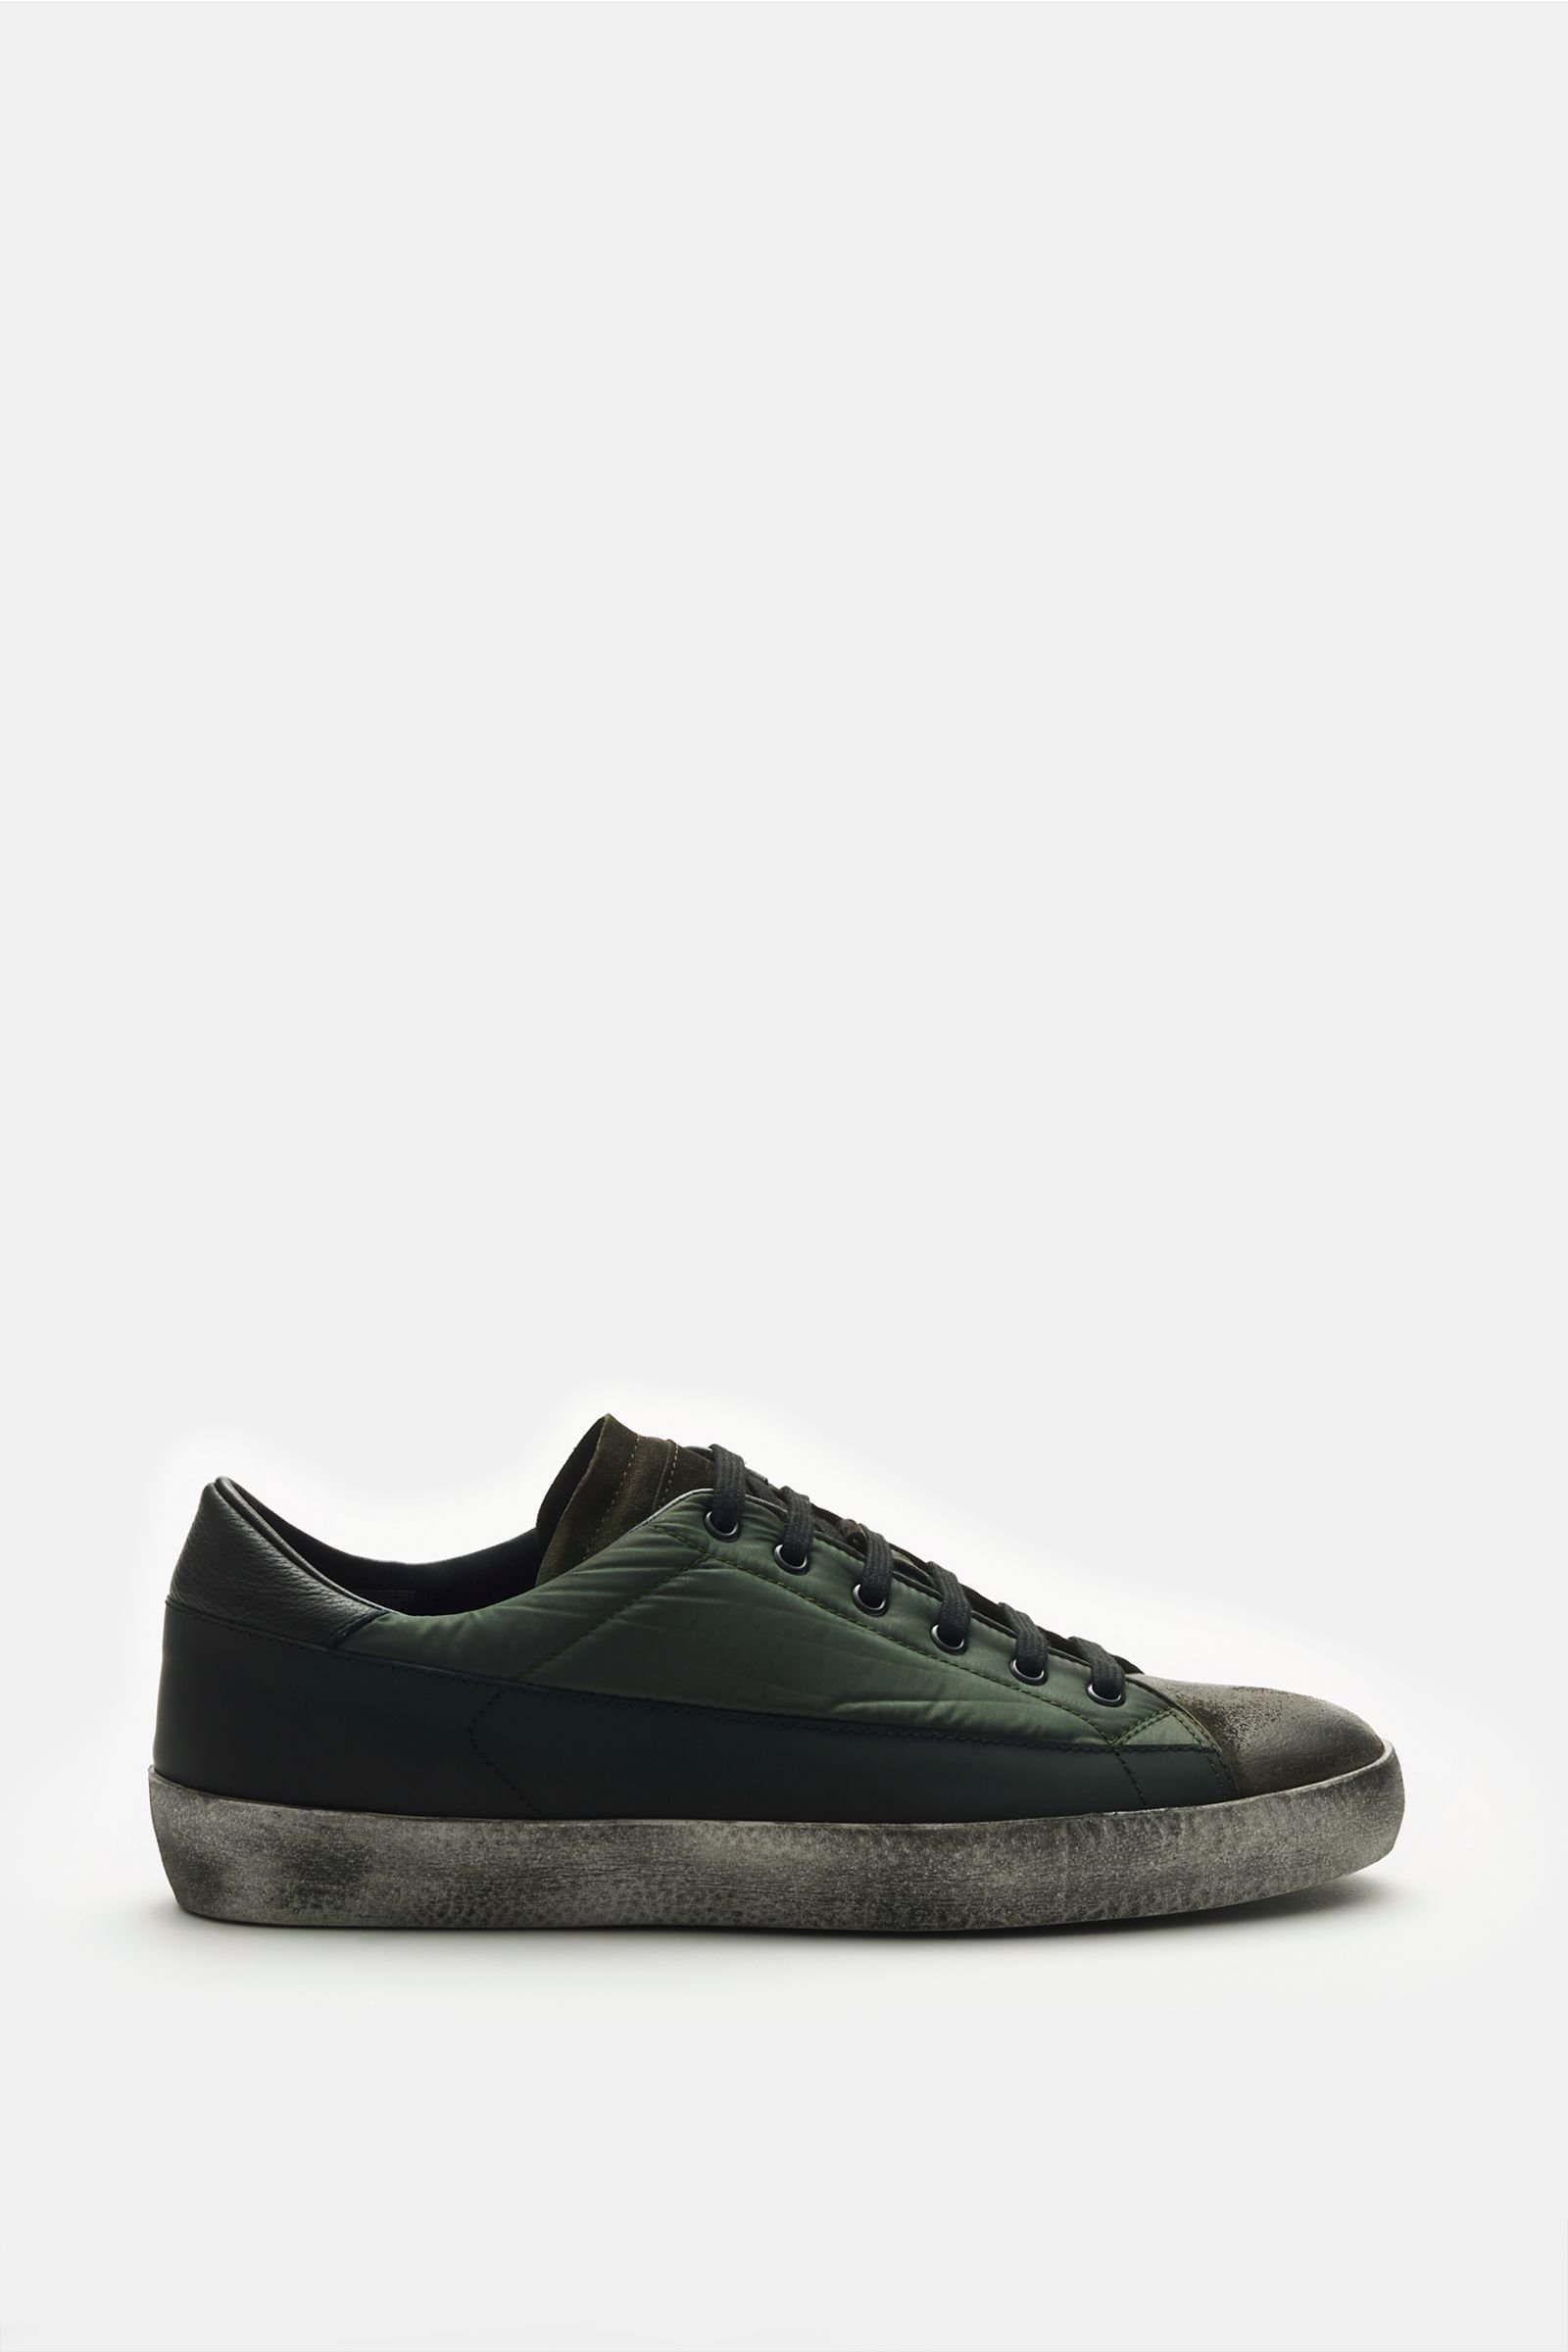 Sneakers olive/black